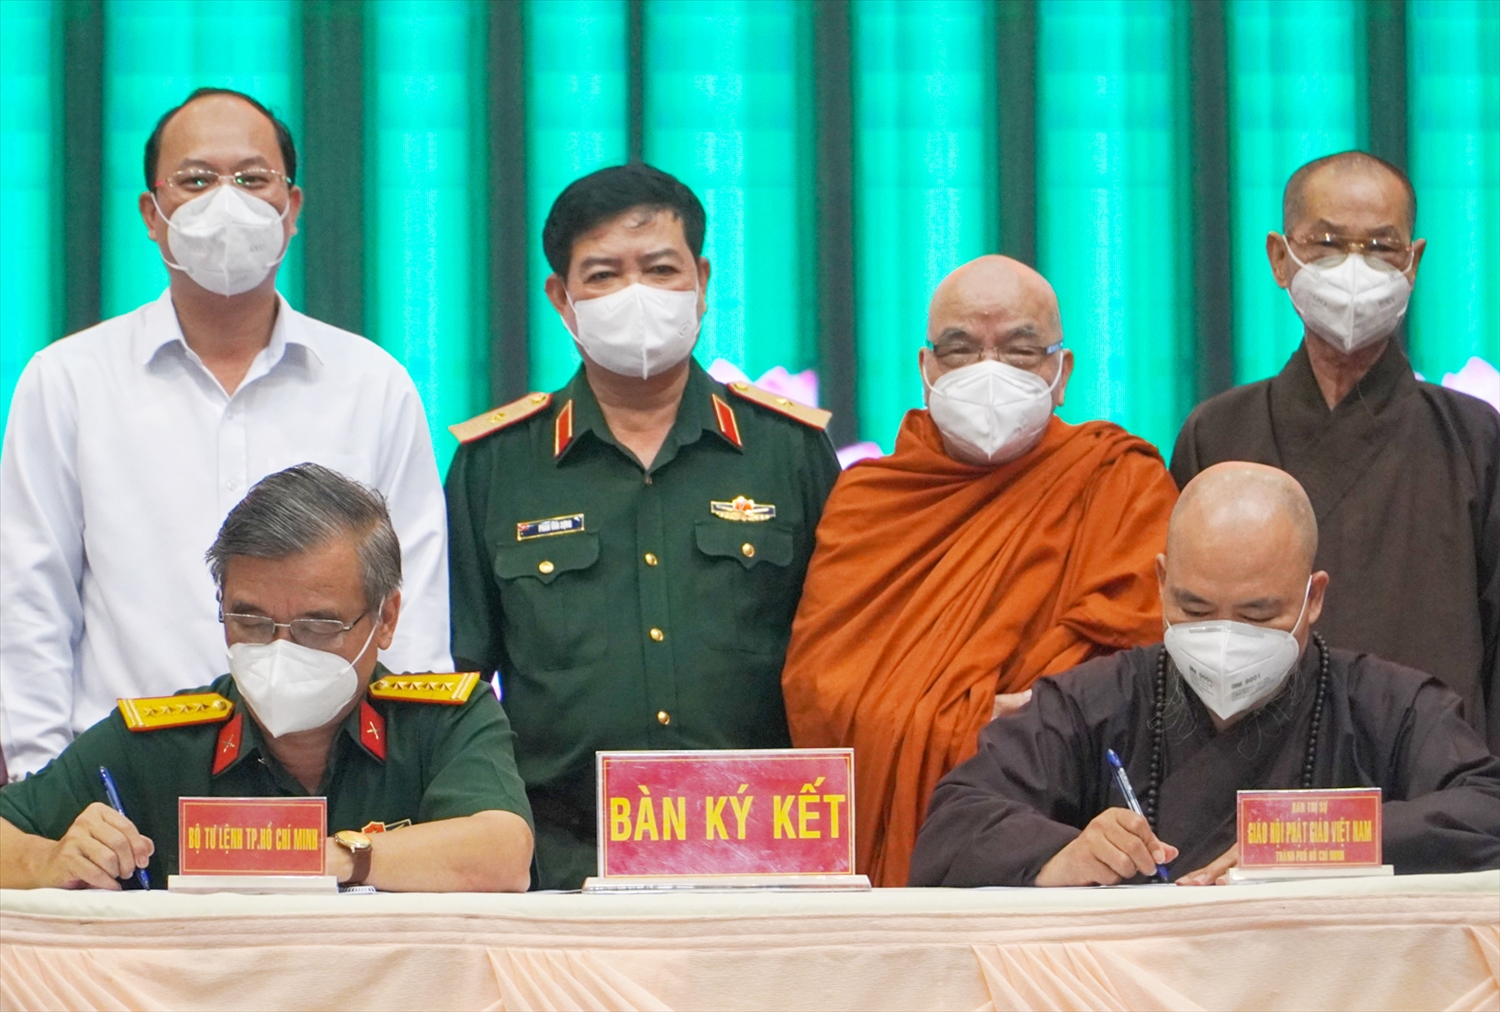 Đại diện Bộ Tư lệnh TP. Hồ Chí Minh và Ban Trị sự Giáo hội Phật giáo Việt Nam Thành phố ký kết Chương trình phối hợp hoạt động giai đoạn 2022 - 2025